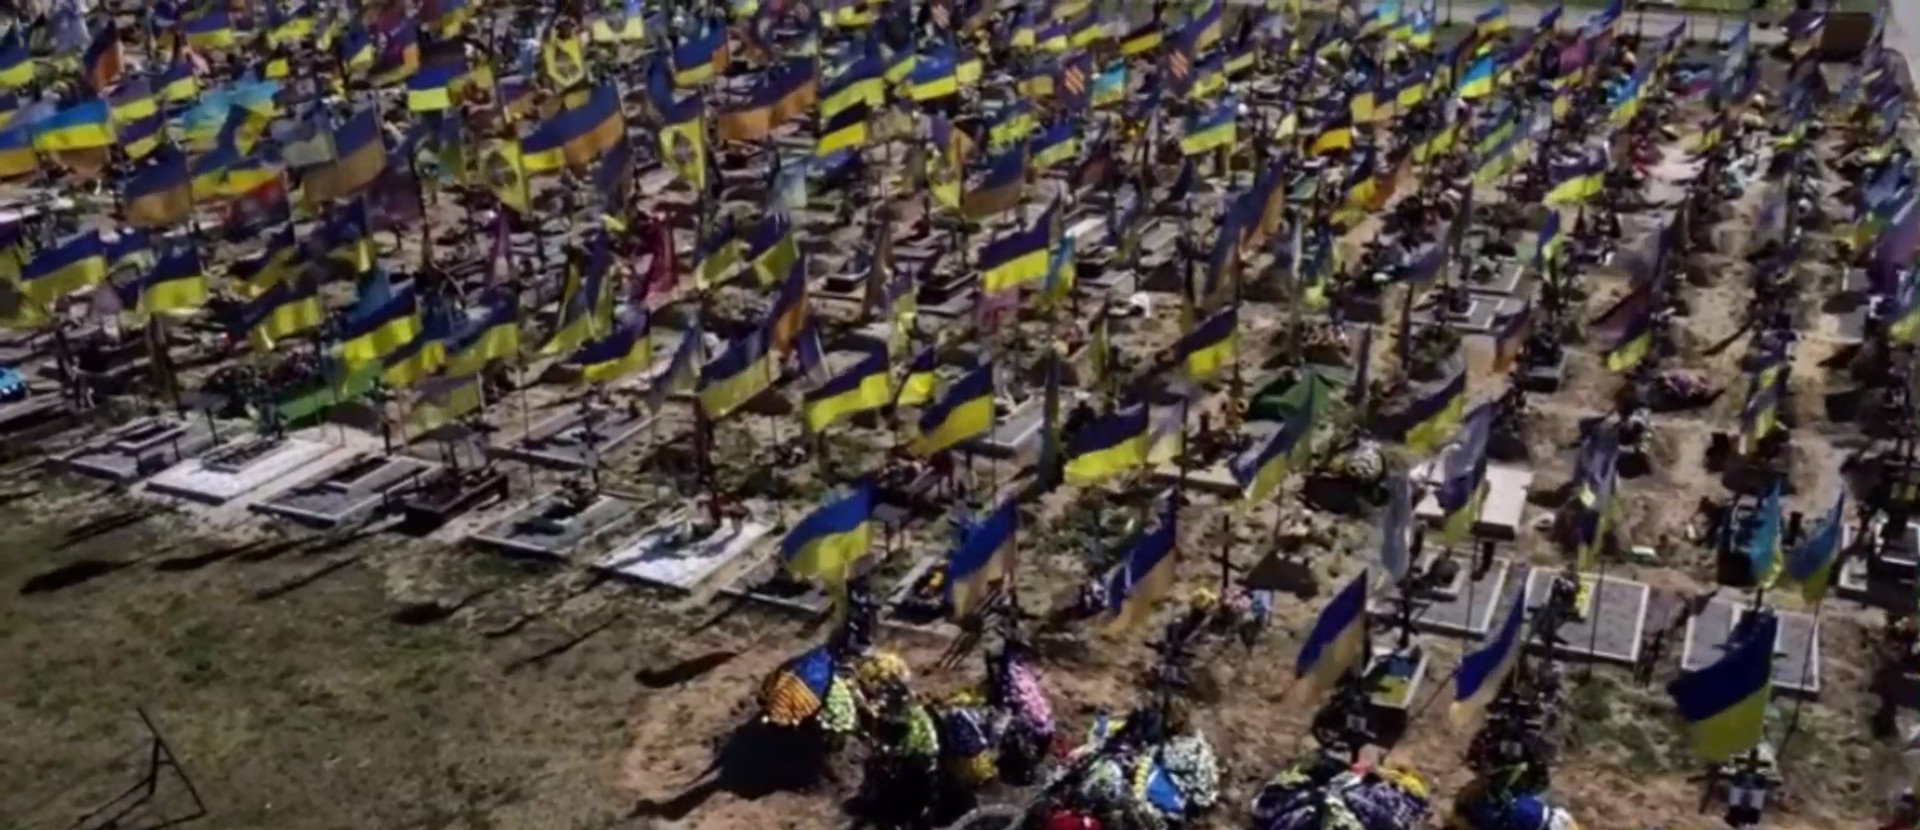 🔴👉Так сейчас выглядит кладбище в Харькове на бывшей Окраїне🔴